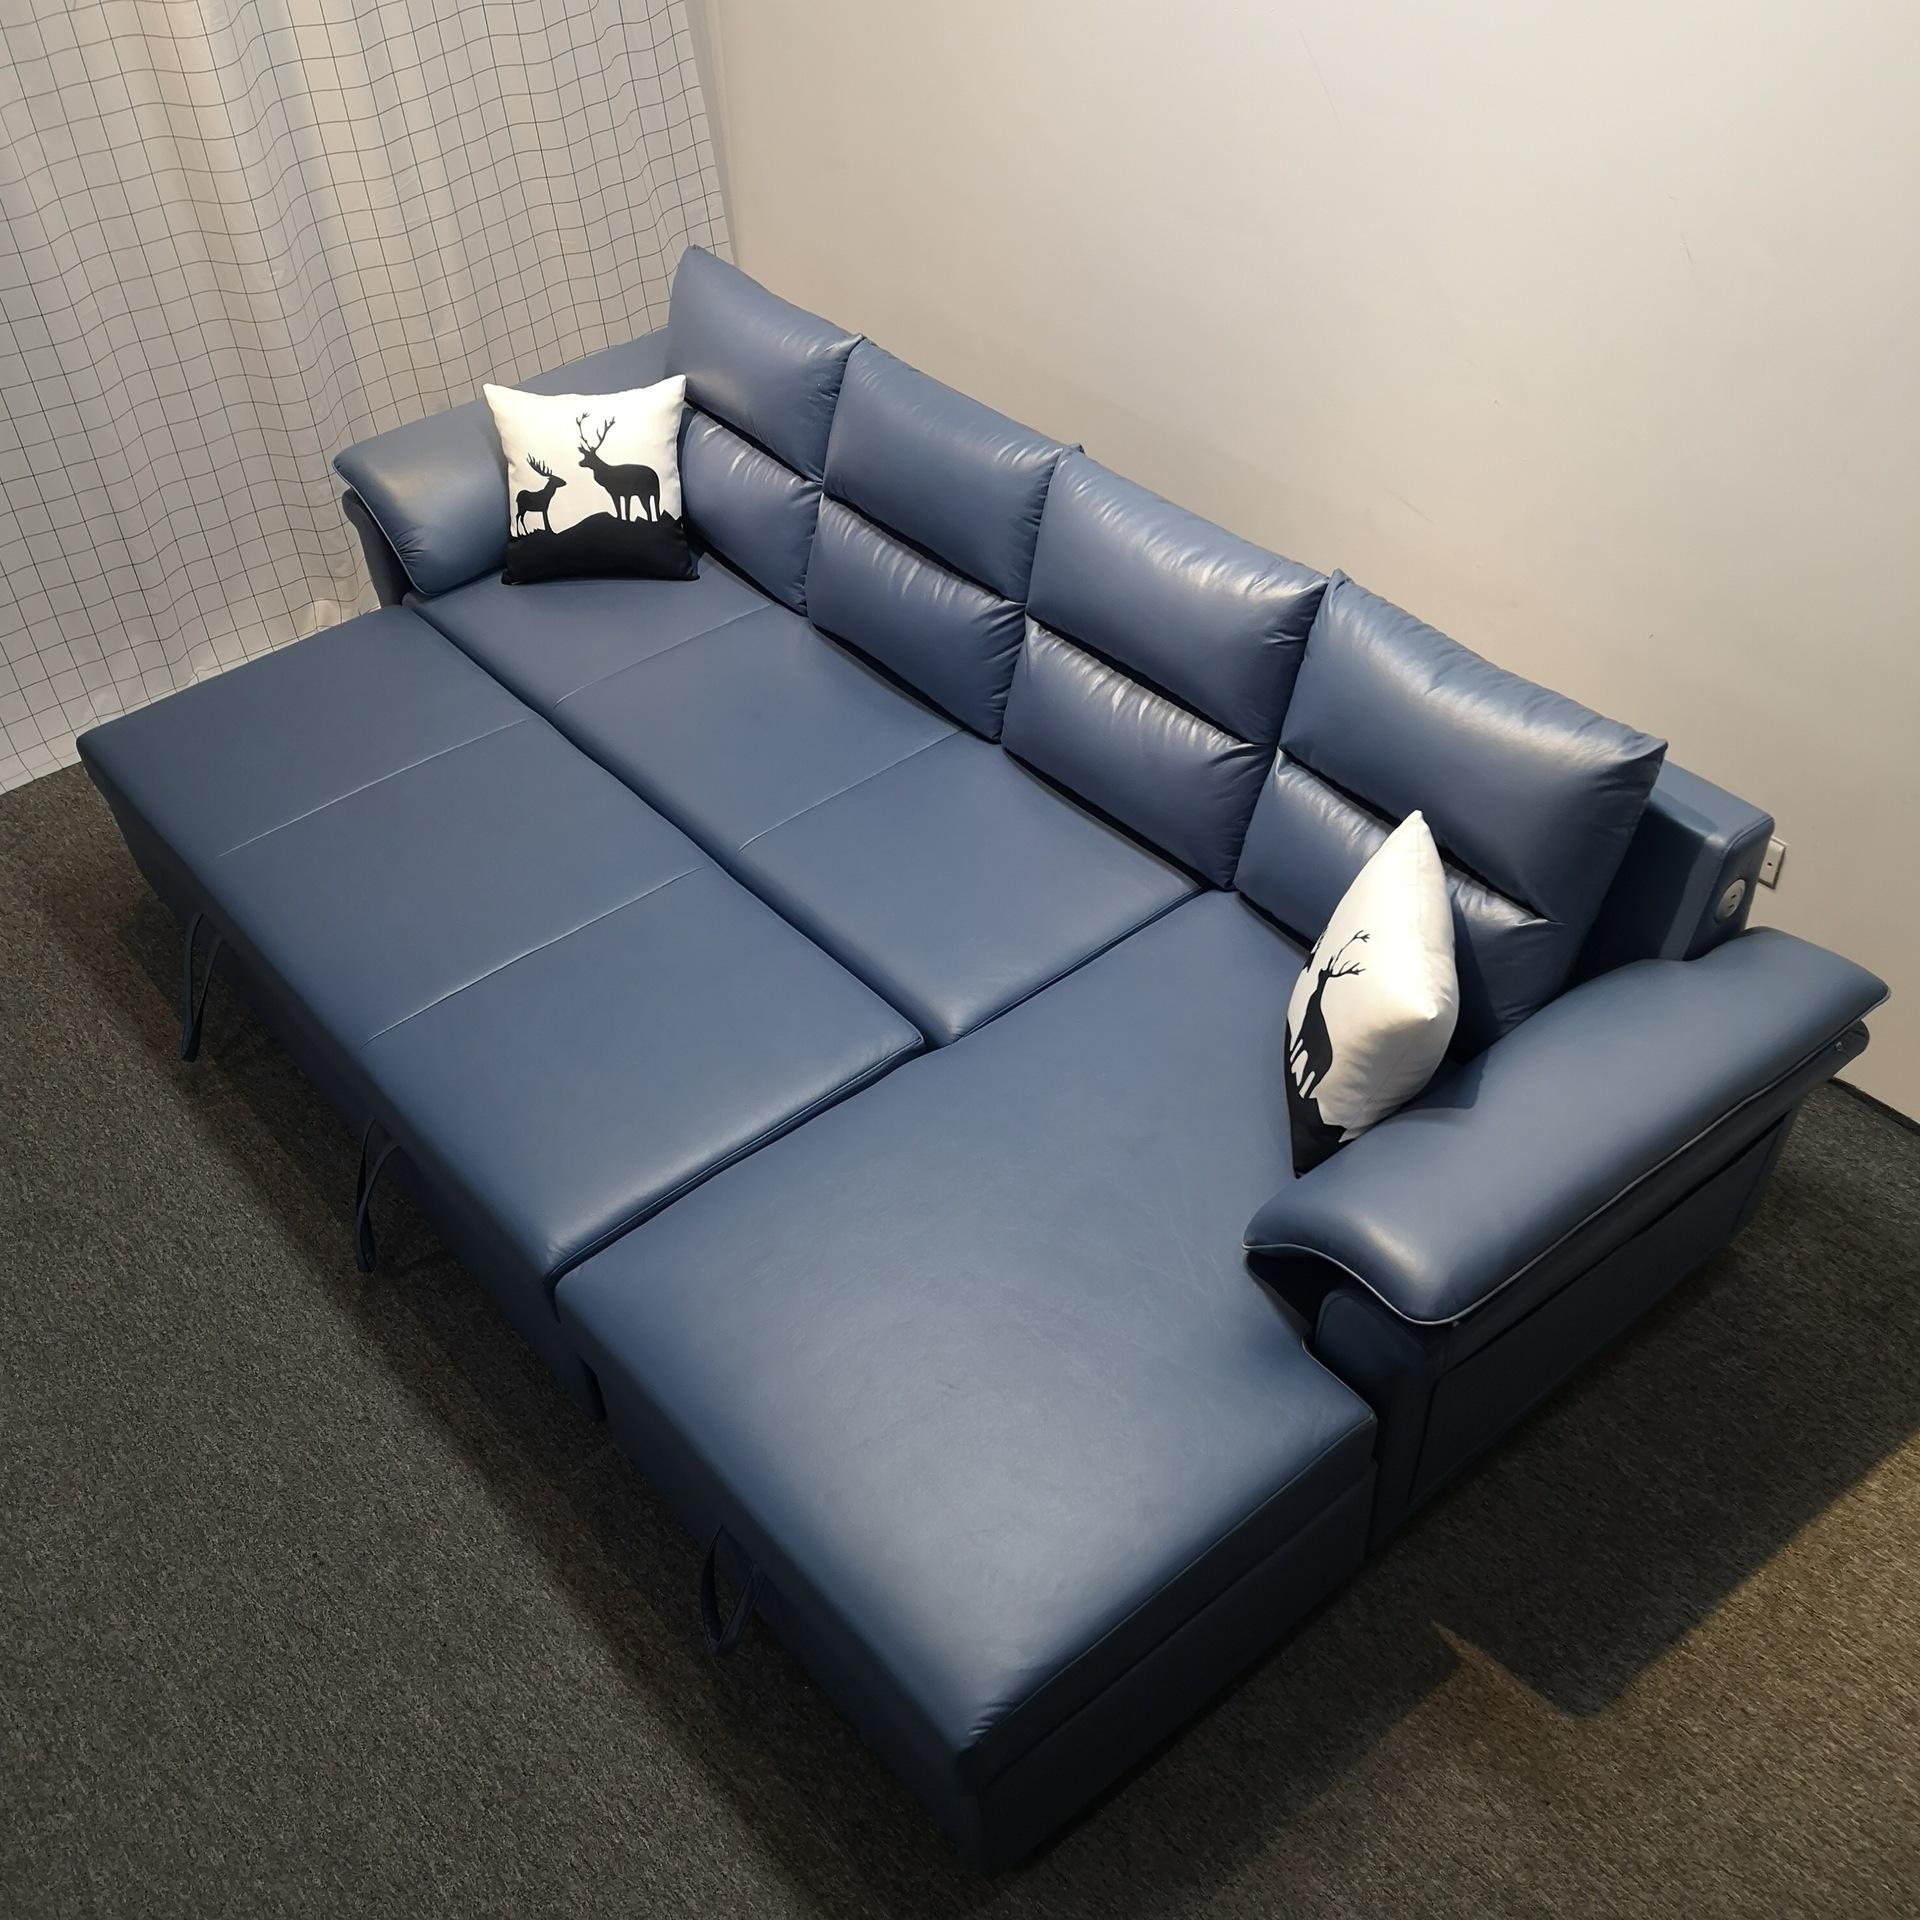 多功能沙发床 小户型转角沙发 储物沙发床两用科技布折叠沙发